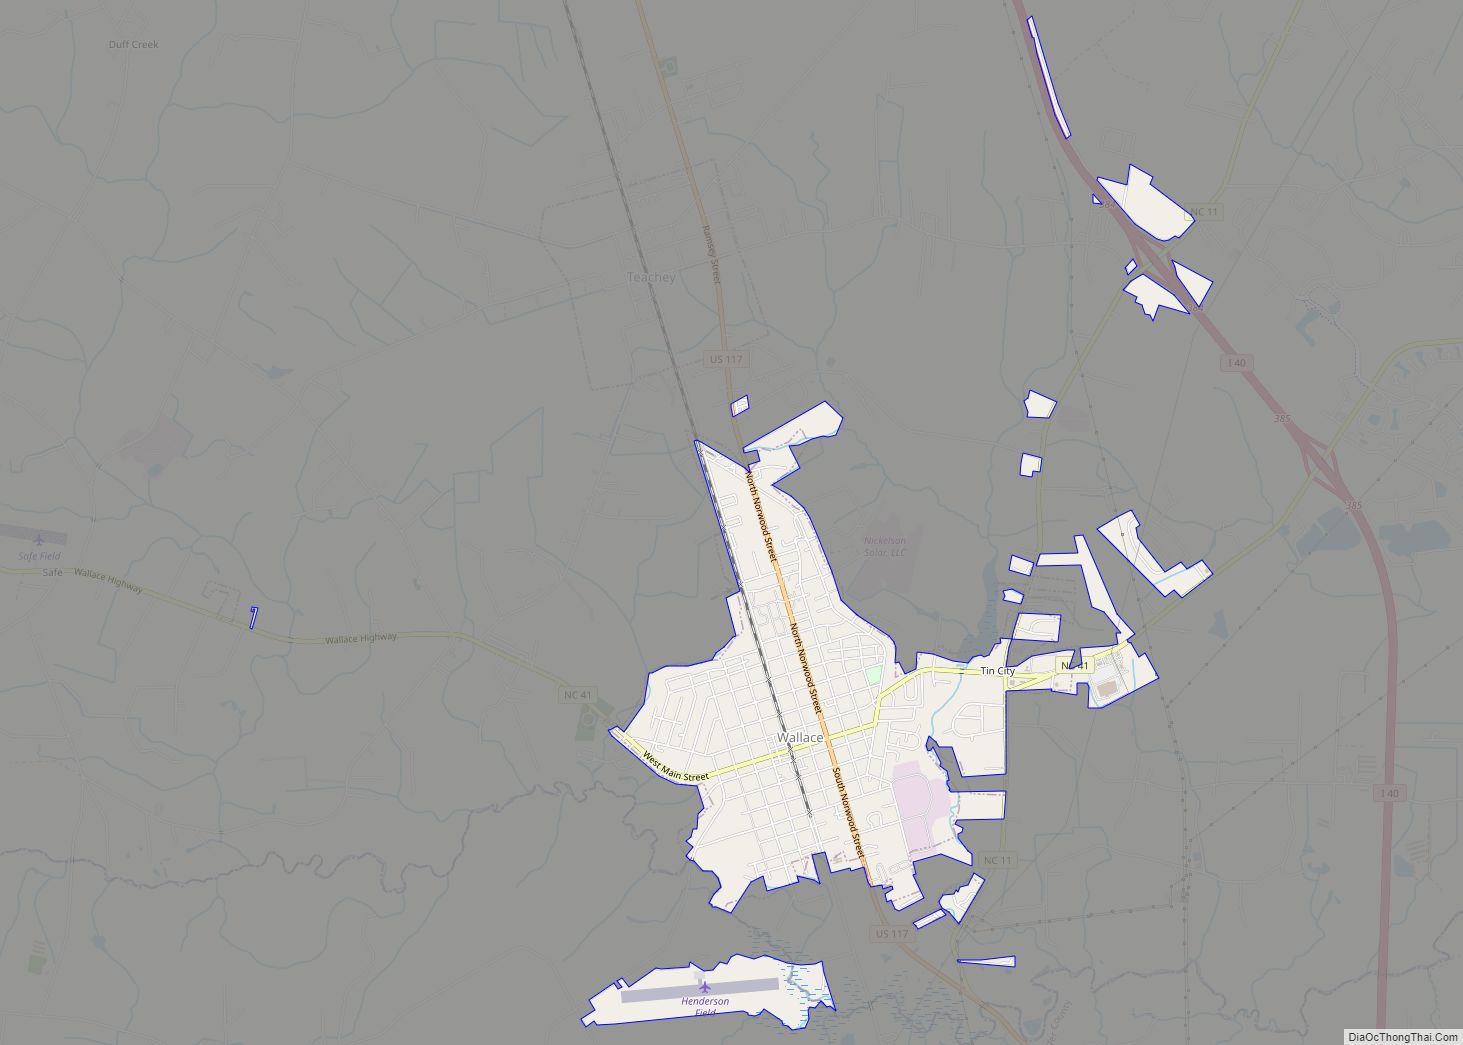 Map of Wallace town, North Carolina